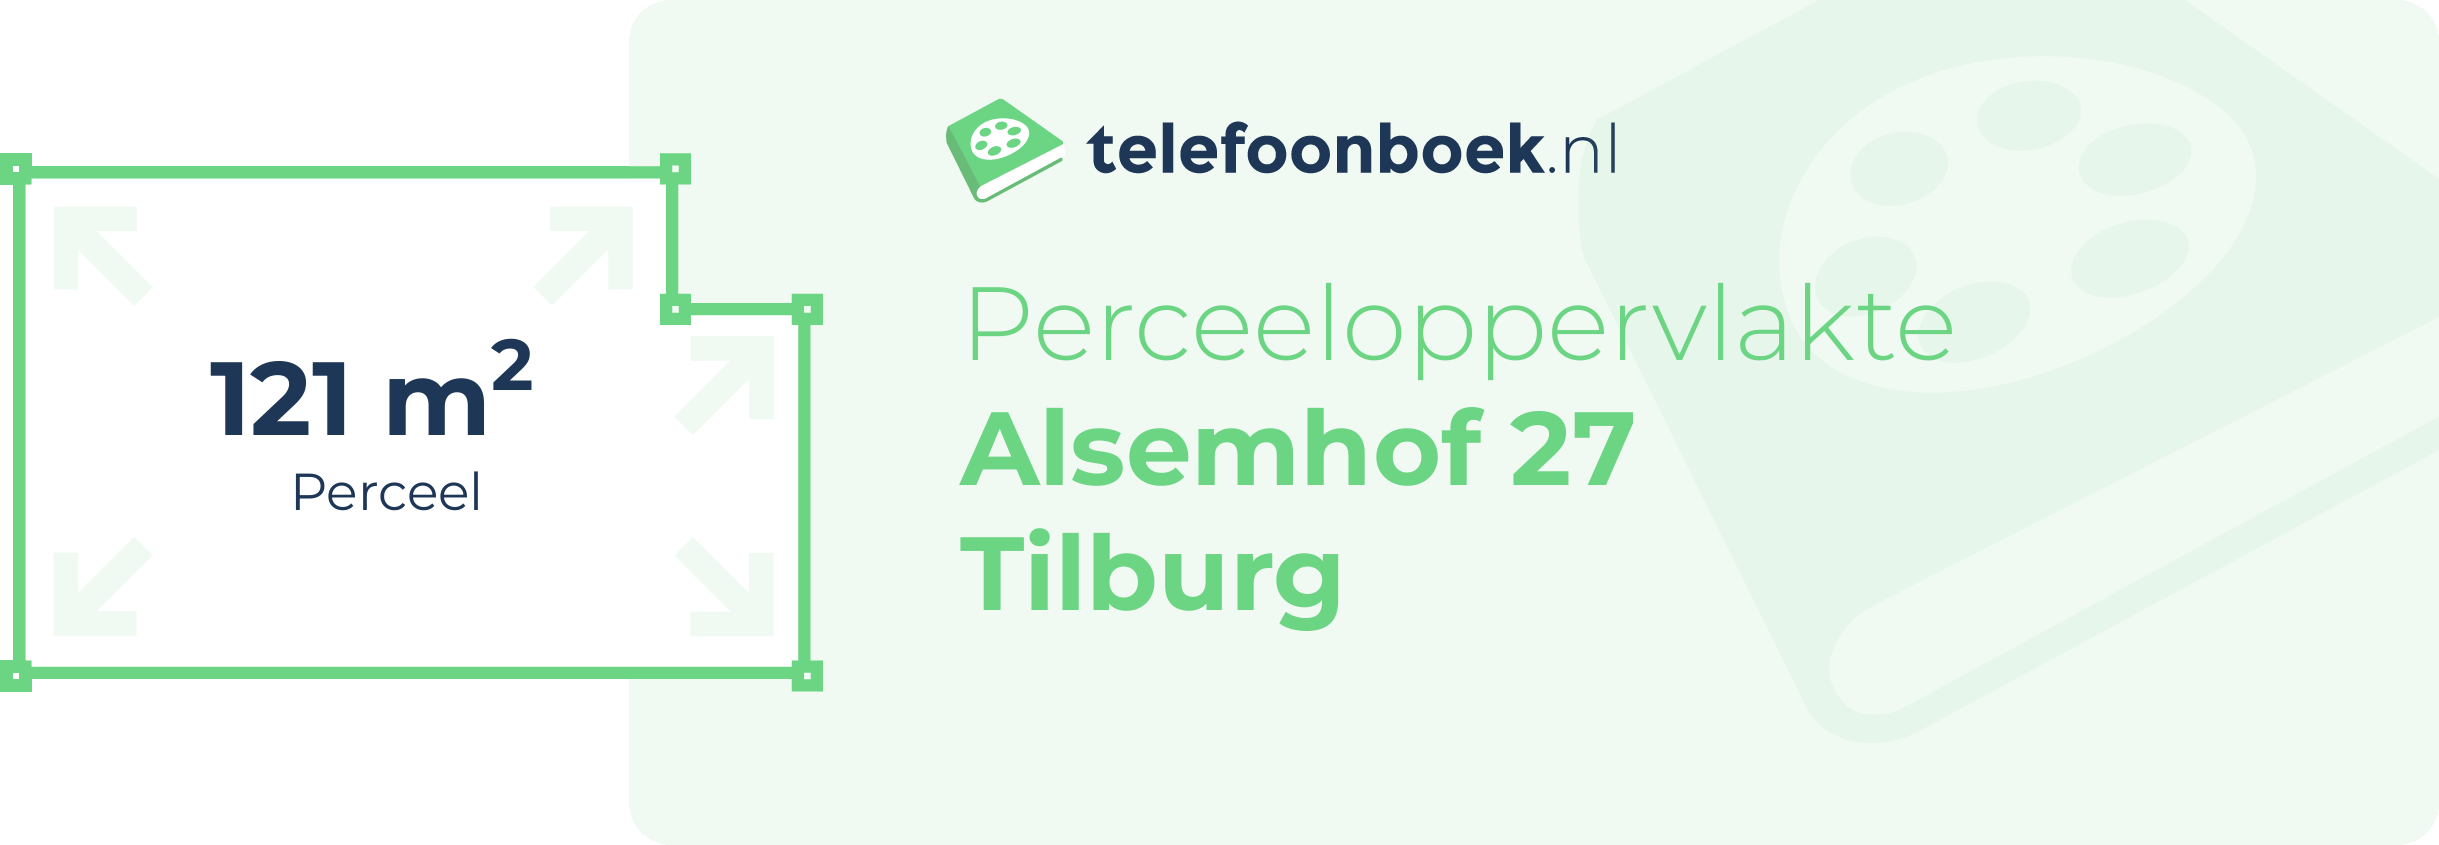 Perceeloppervlakte Alsemhof 27 Tilburg